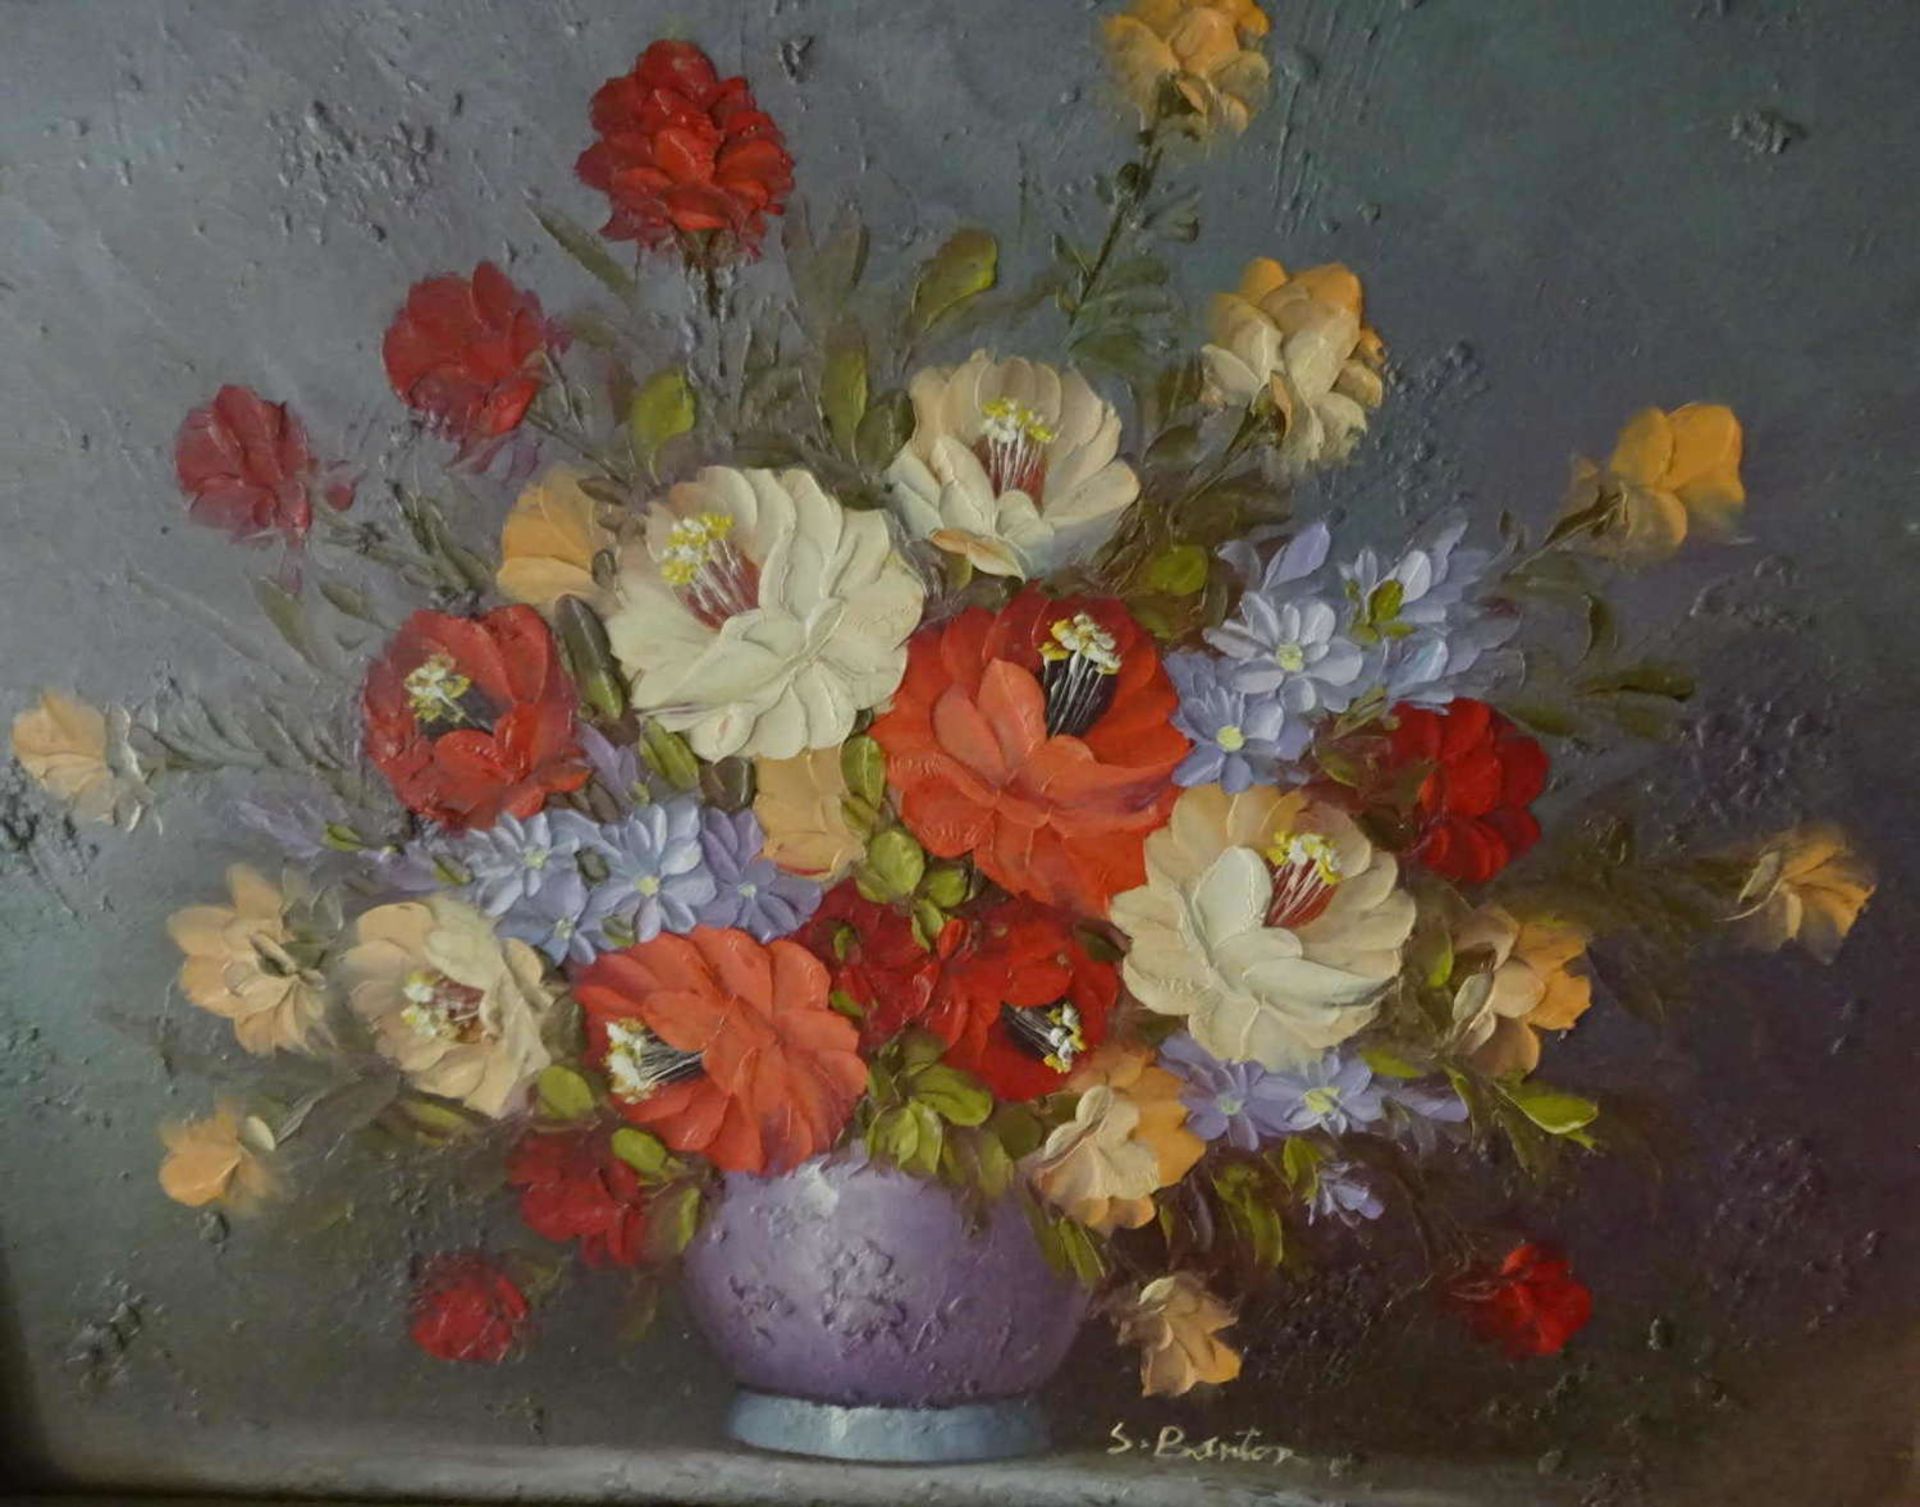 S. Barton. "Blumenarrangement" teilweise mit Farbverlust, in massiven Rahmen. Rechts unten Signatur, - Bild 2 aus 3